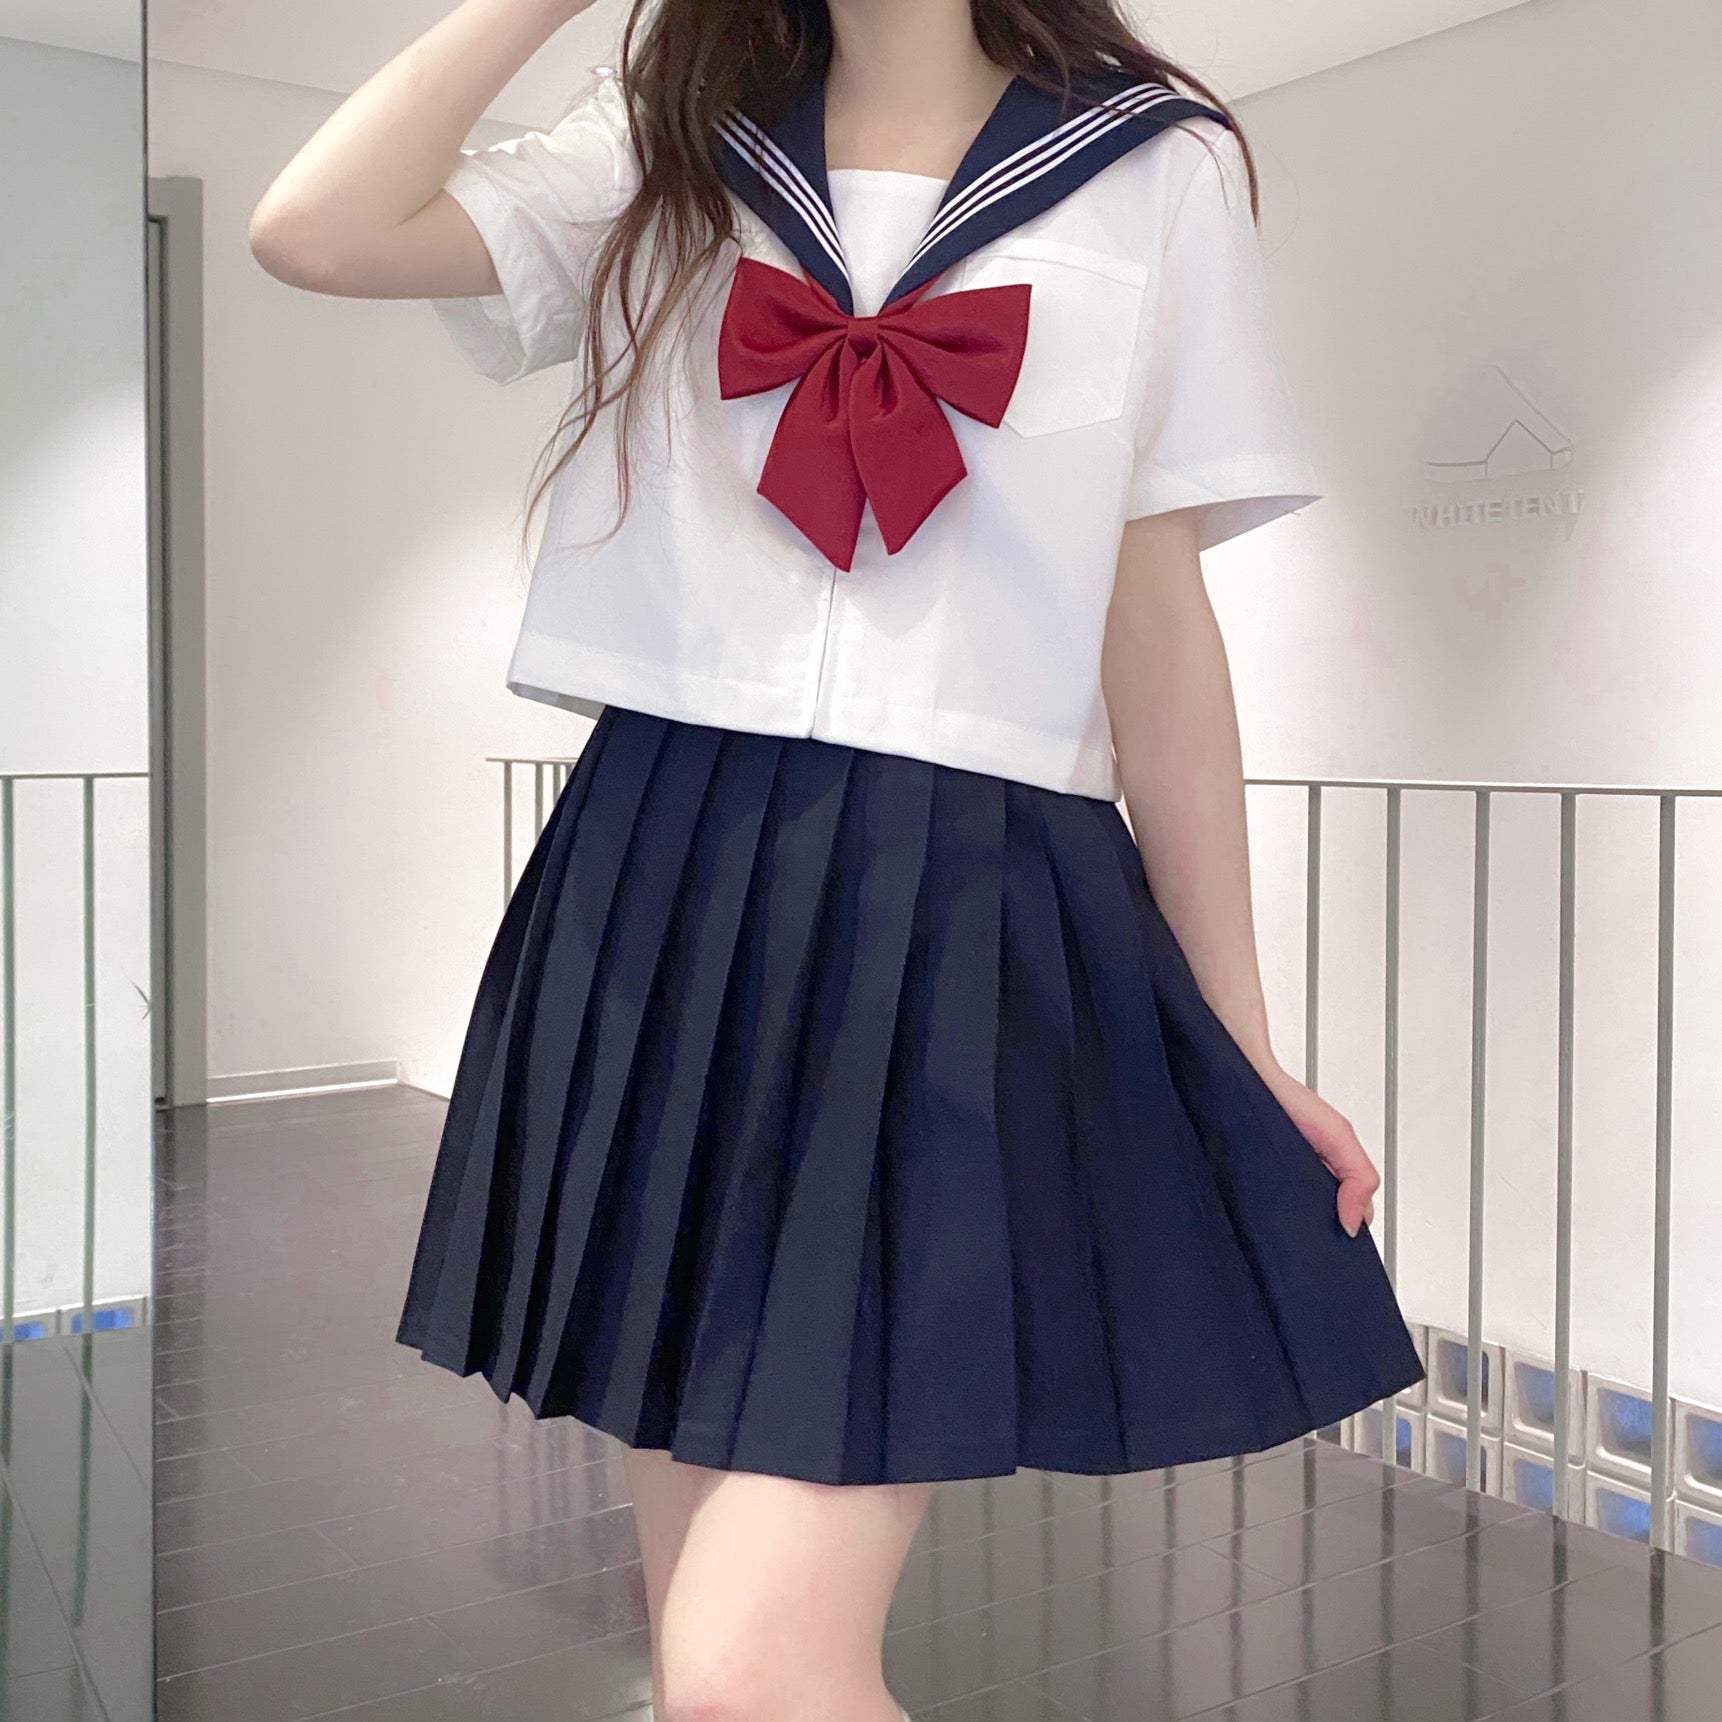 Sailor suit jk uniform skirt suit HA1118 – hanaesbusiness